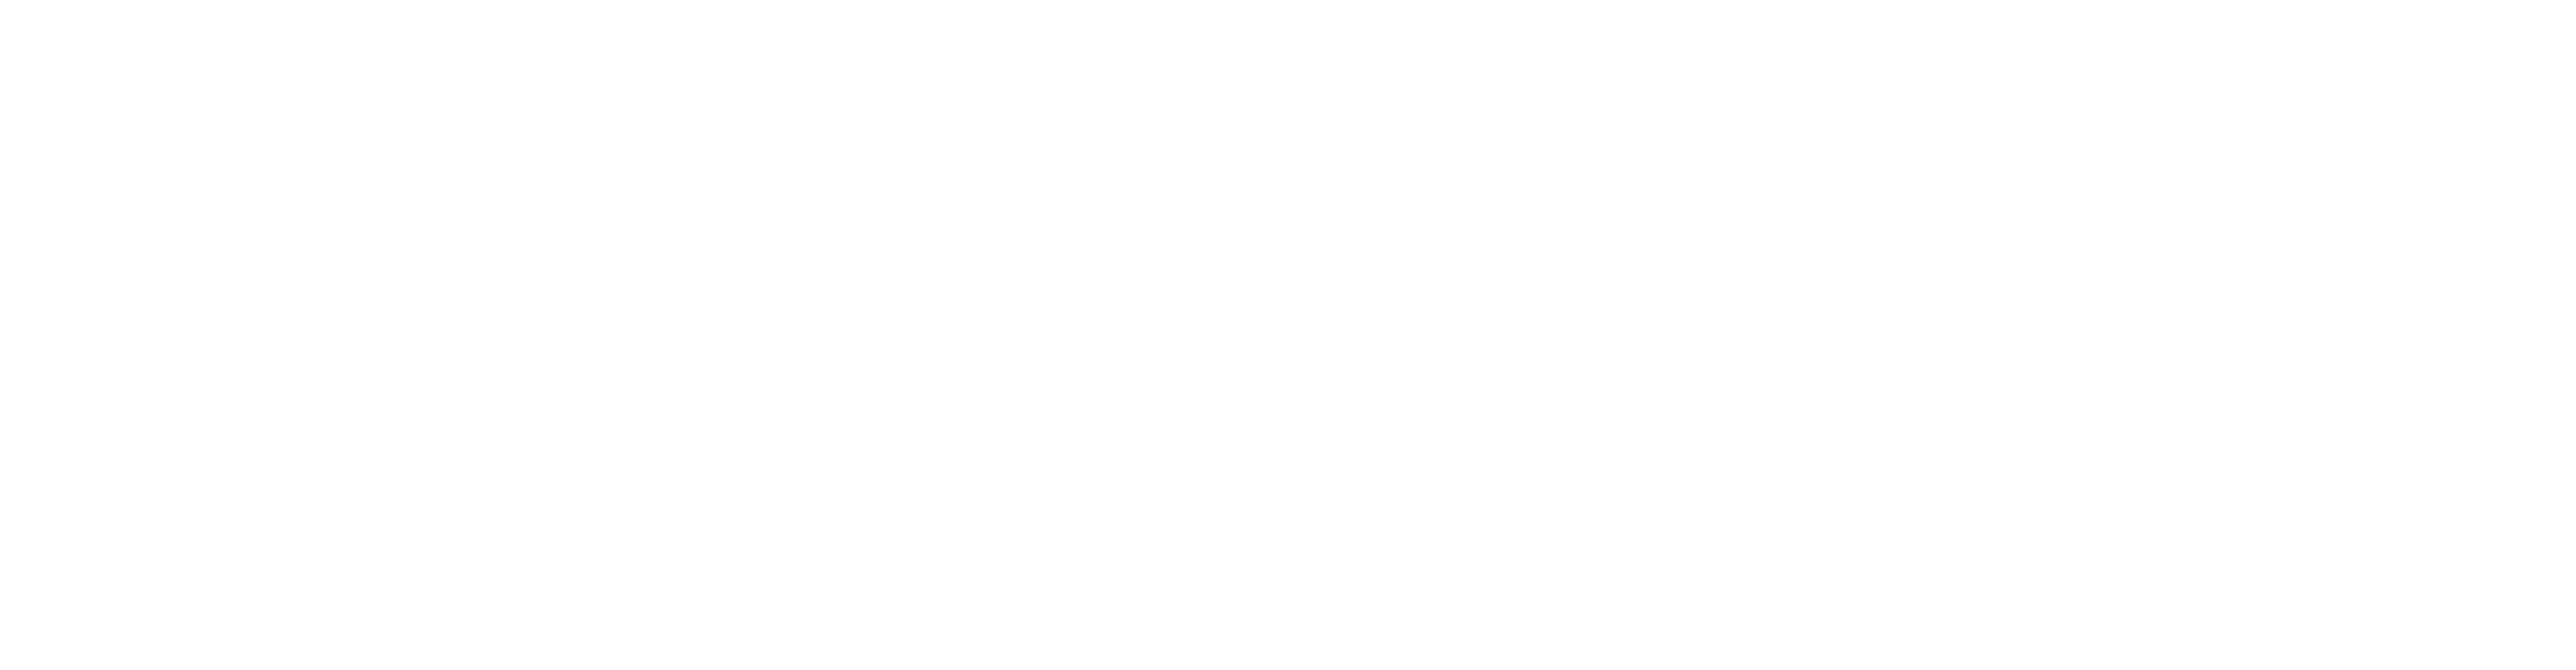 Wilkinson & Finkbeiner, LLP